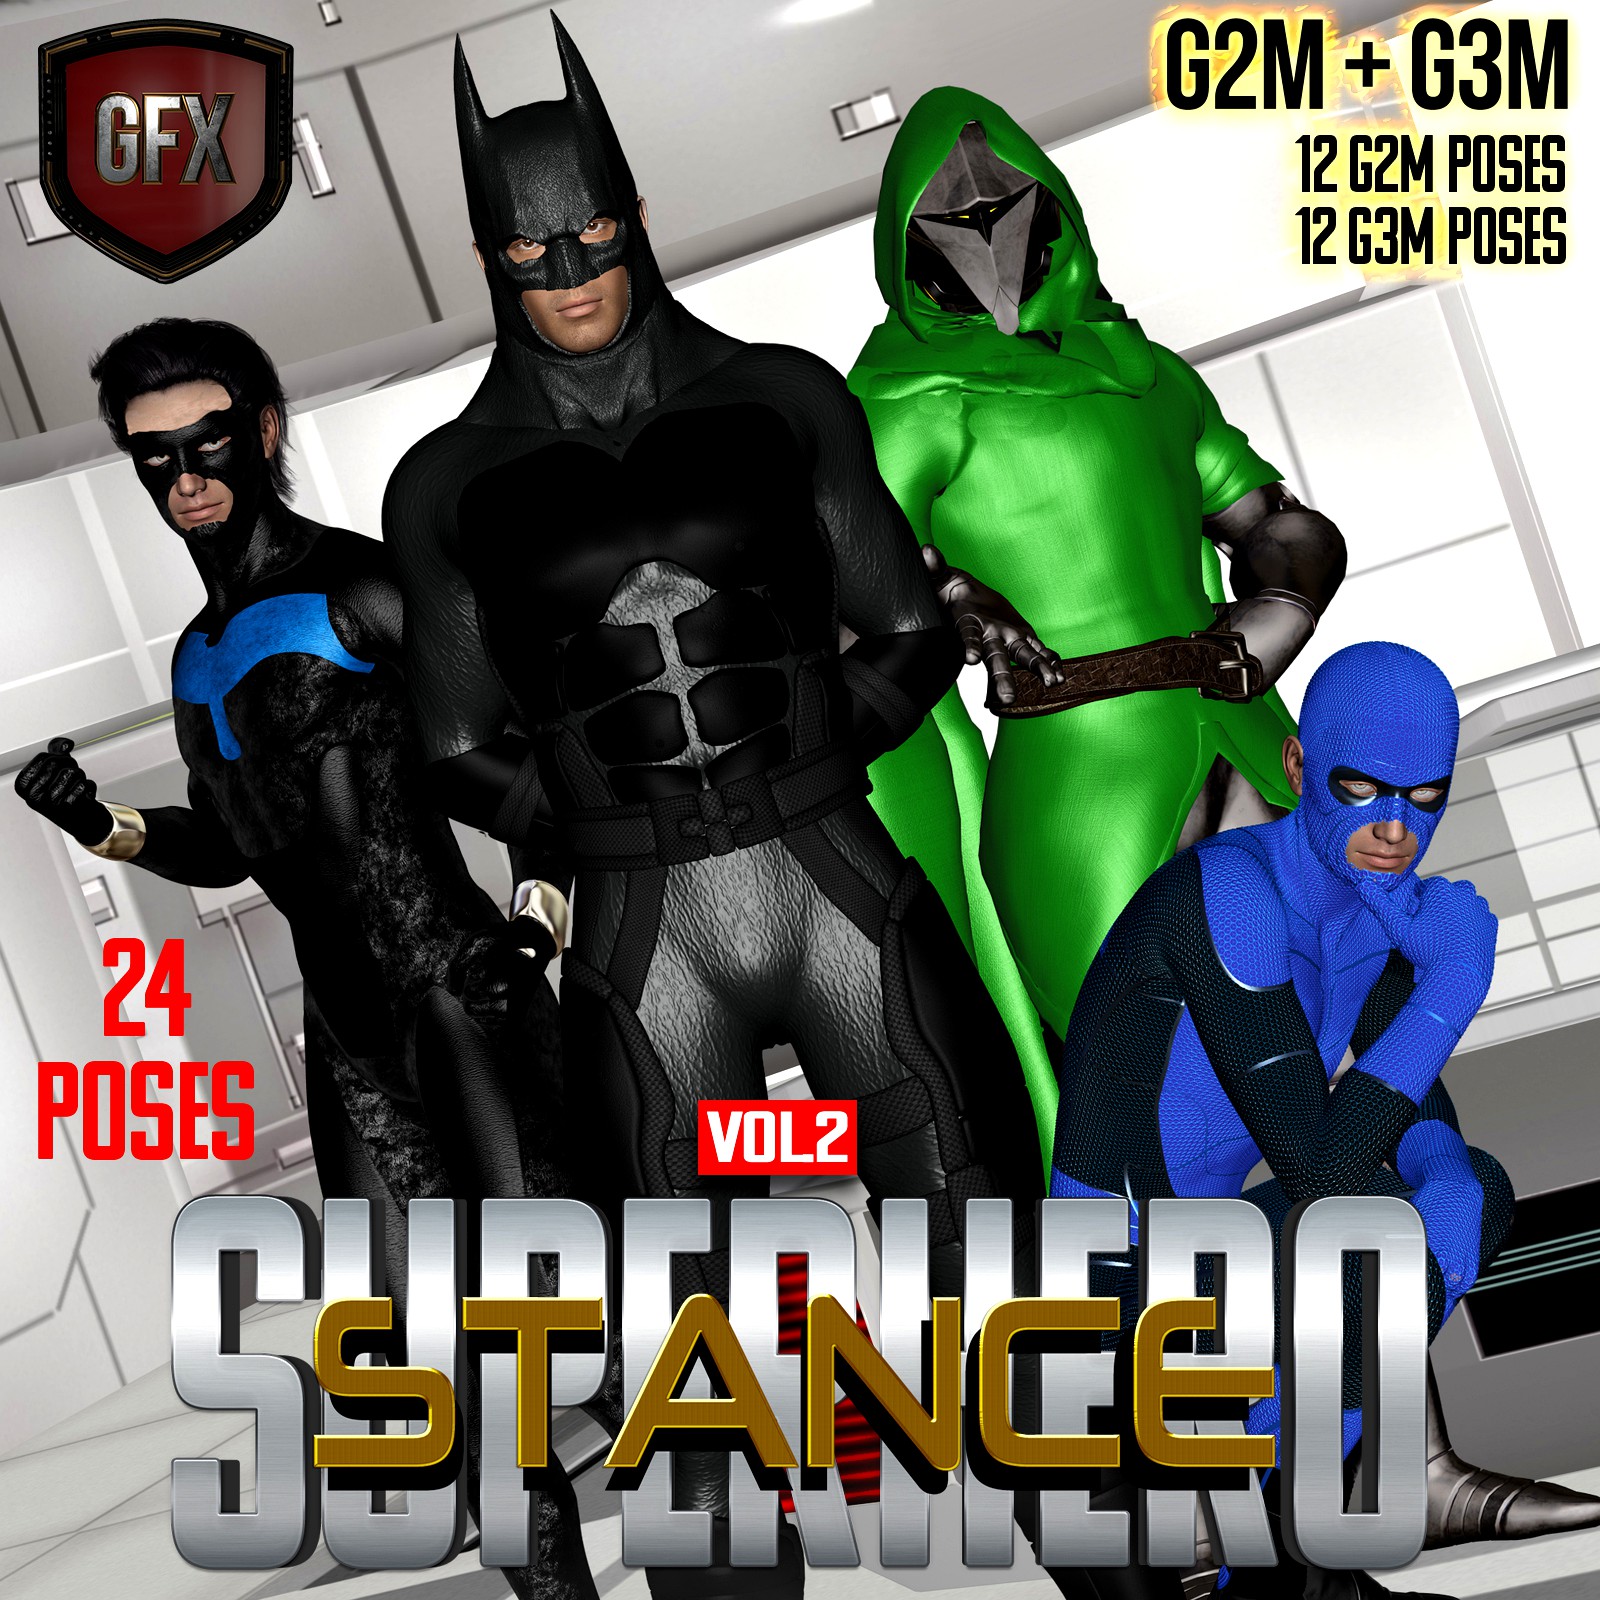 SuperHero Stance for G2M & G3M Volume 2